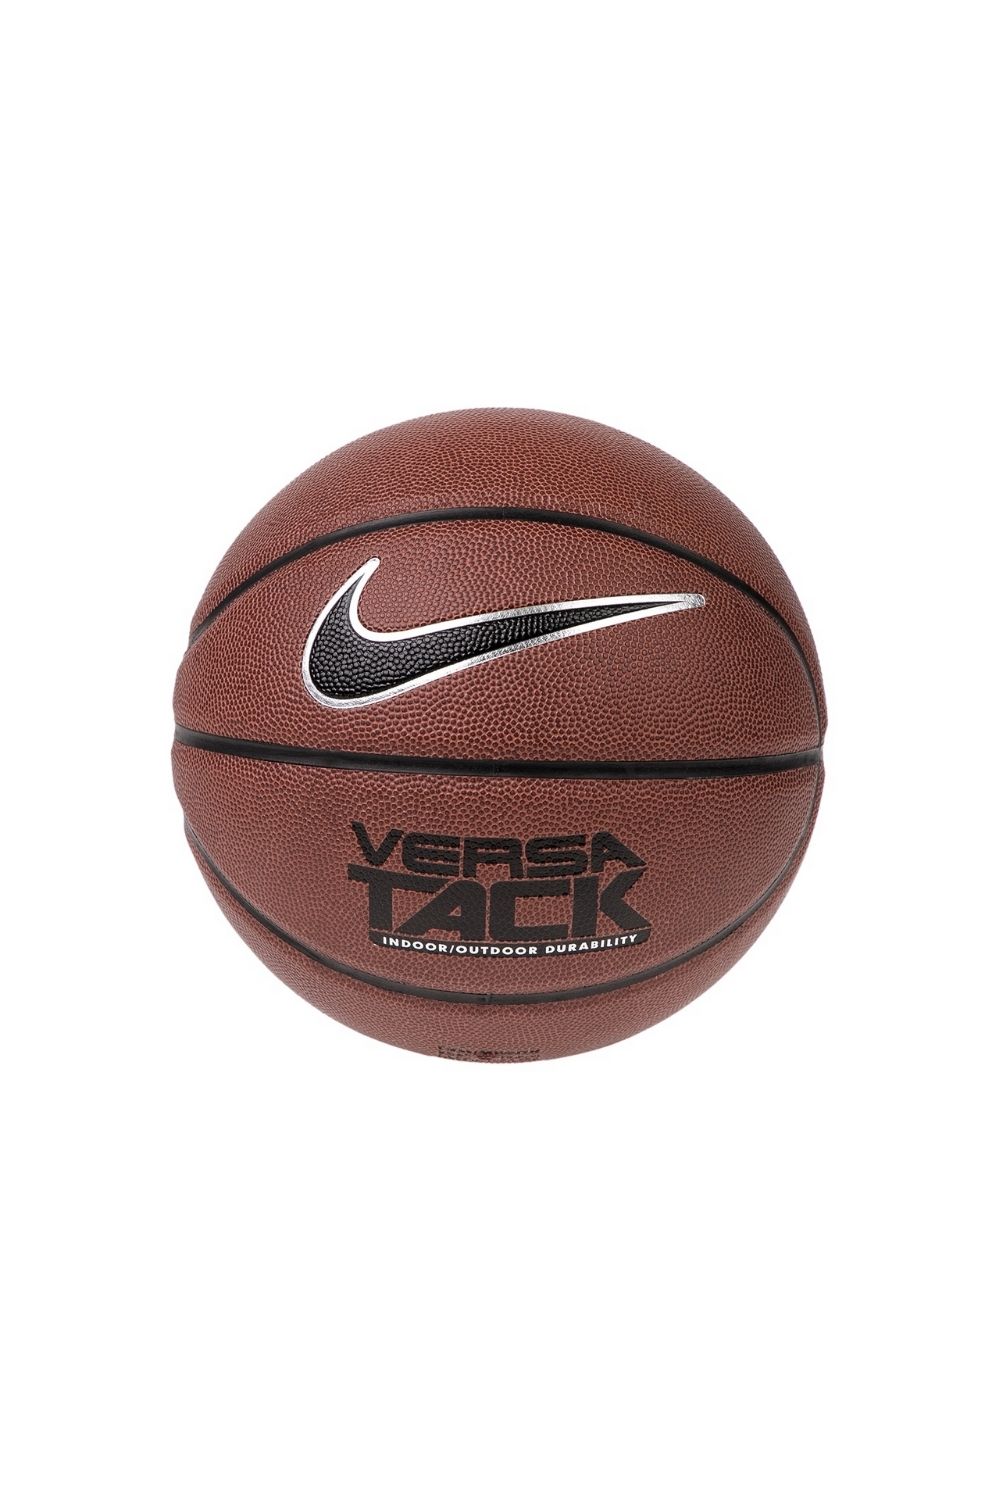 Ανδρικά/Αξεσουάρ/Αθλητικά Είδη/Μπάλες NIKE - Μπάλα basketball NIKE VERSA TACK 8P πορτοκαλί